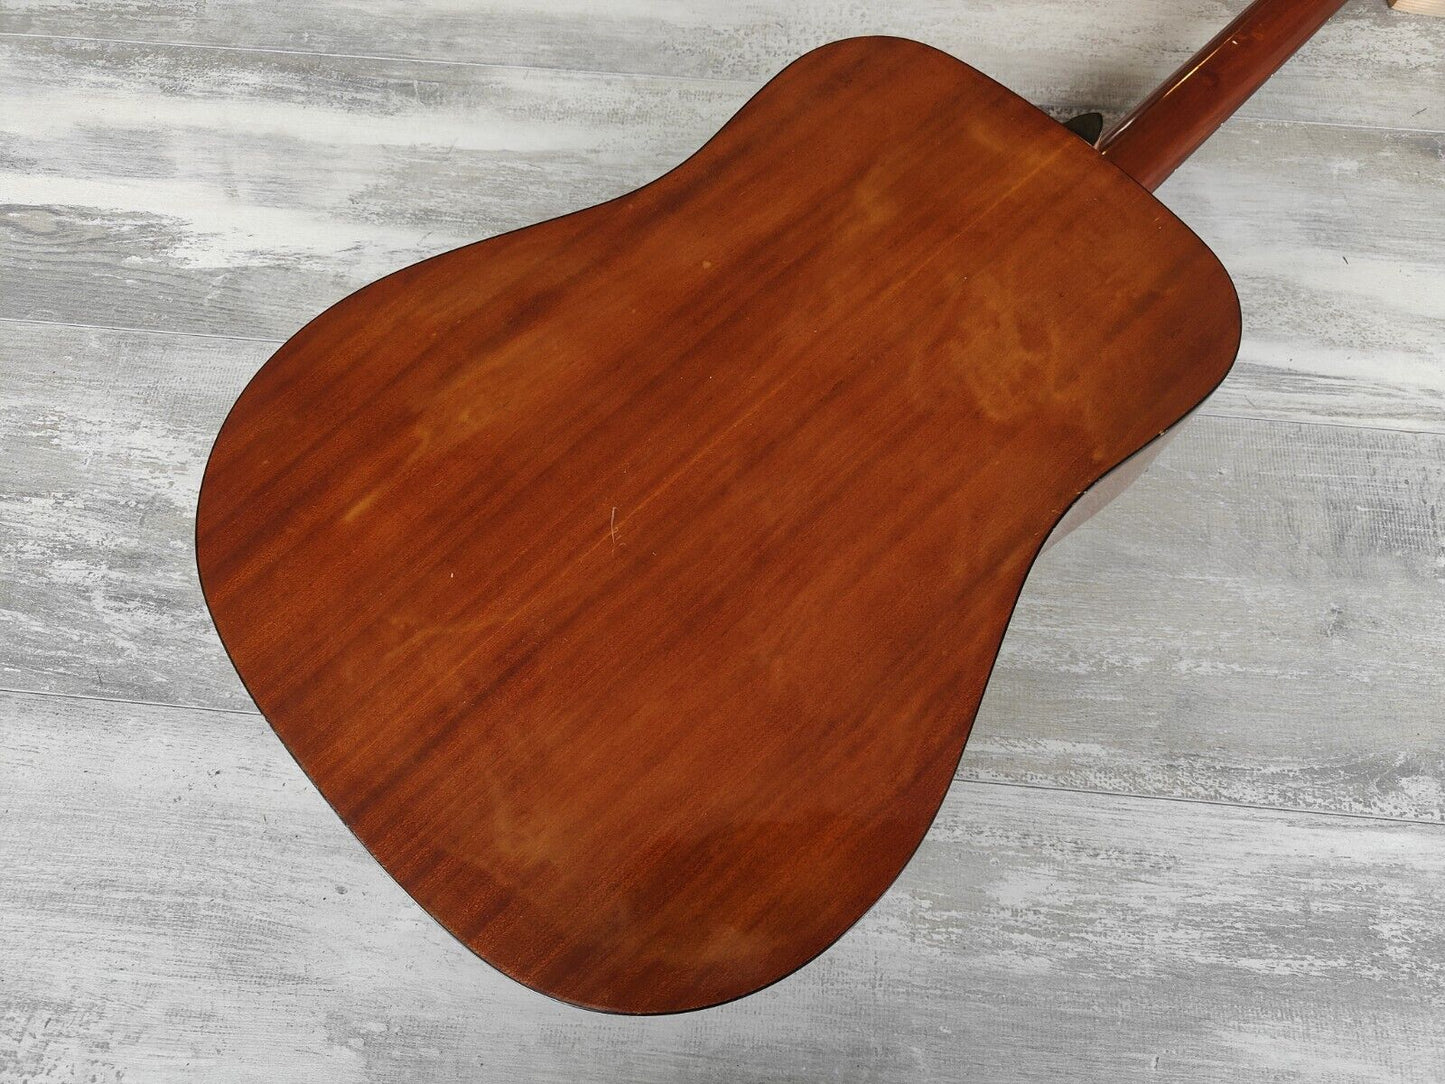 Hummingbird Custom (by Tokai Japan) Acoustic Guitar (Natural)